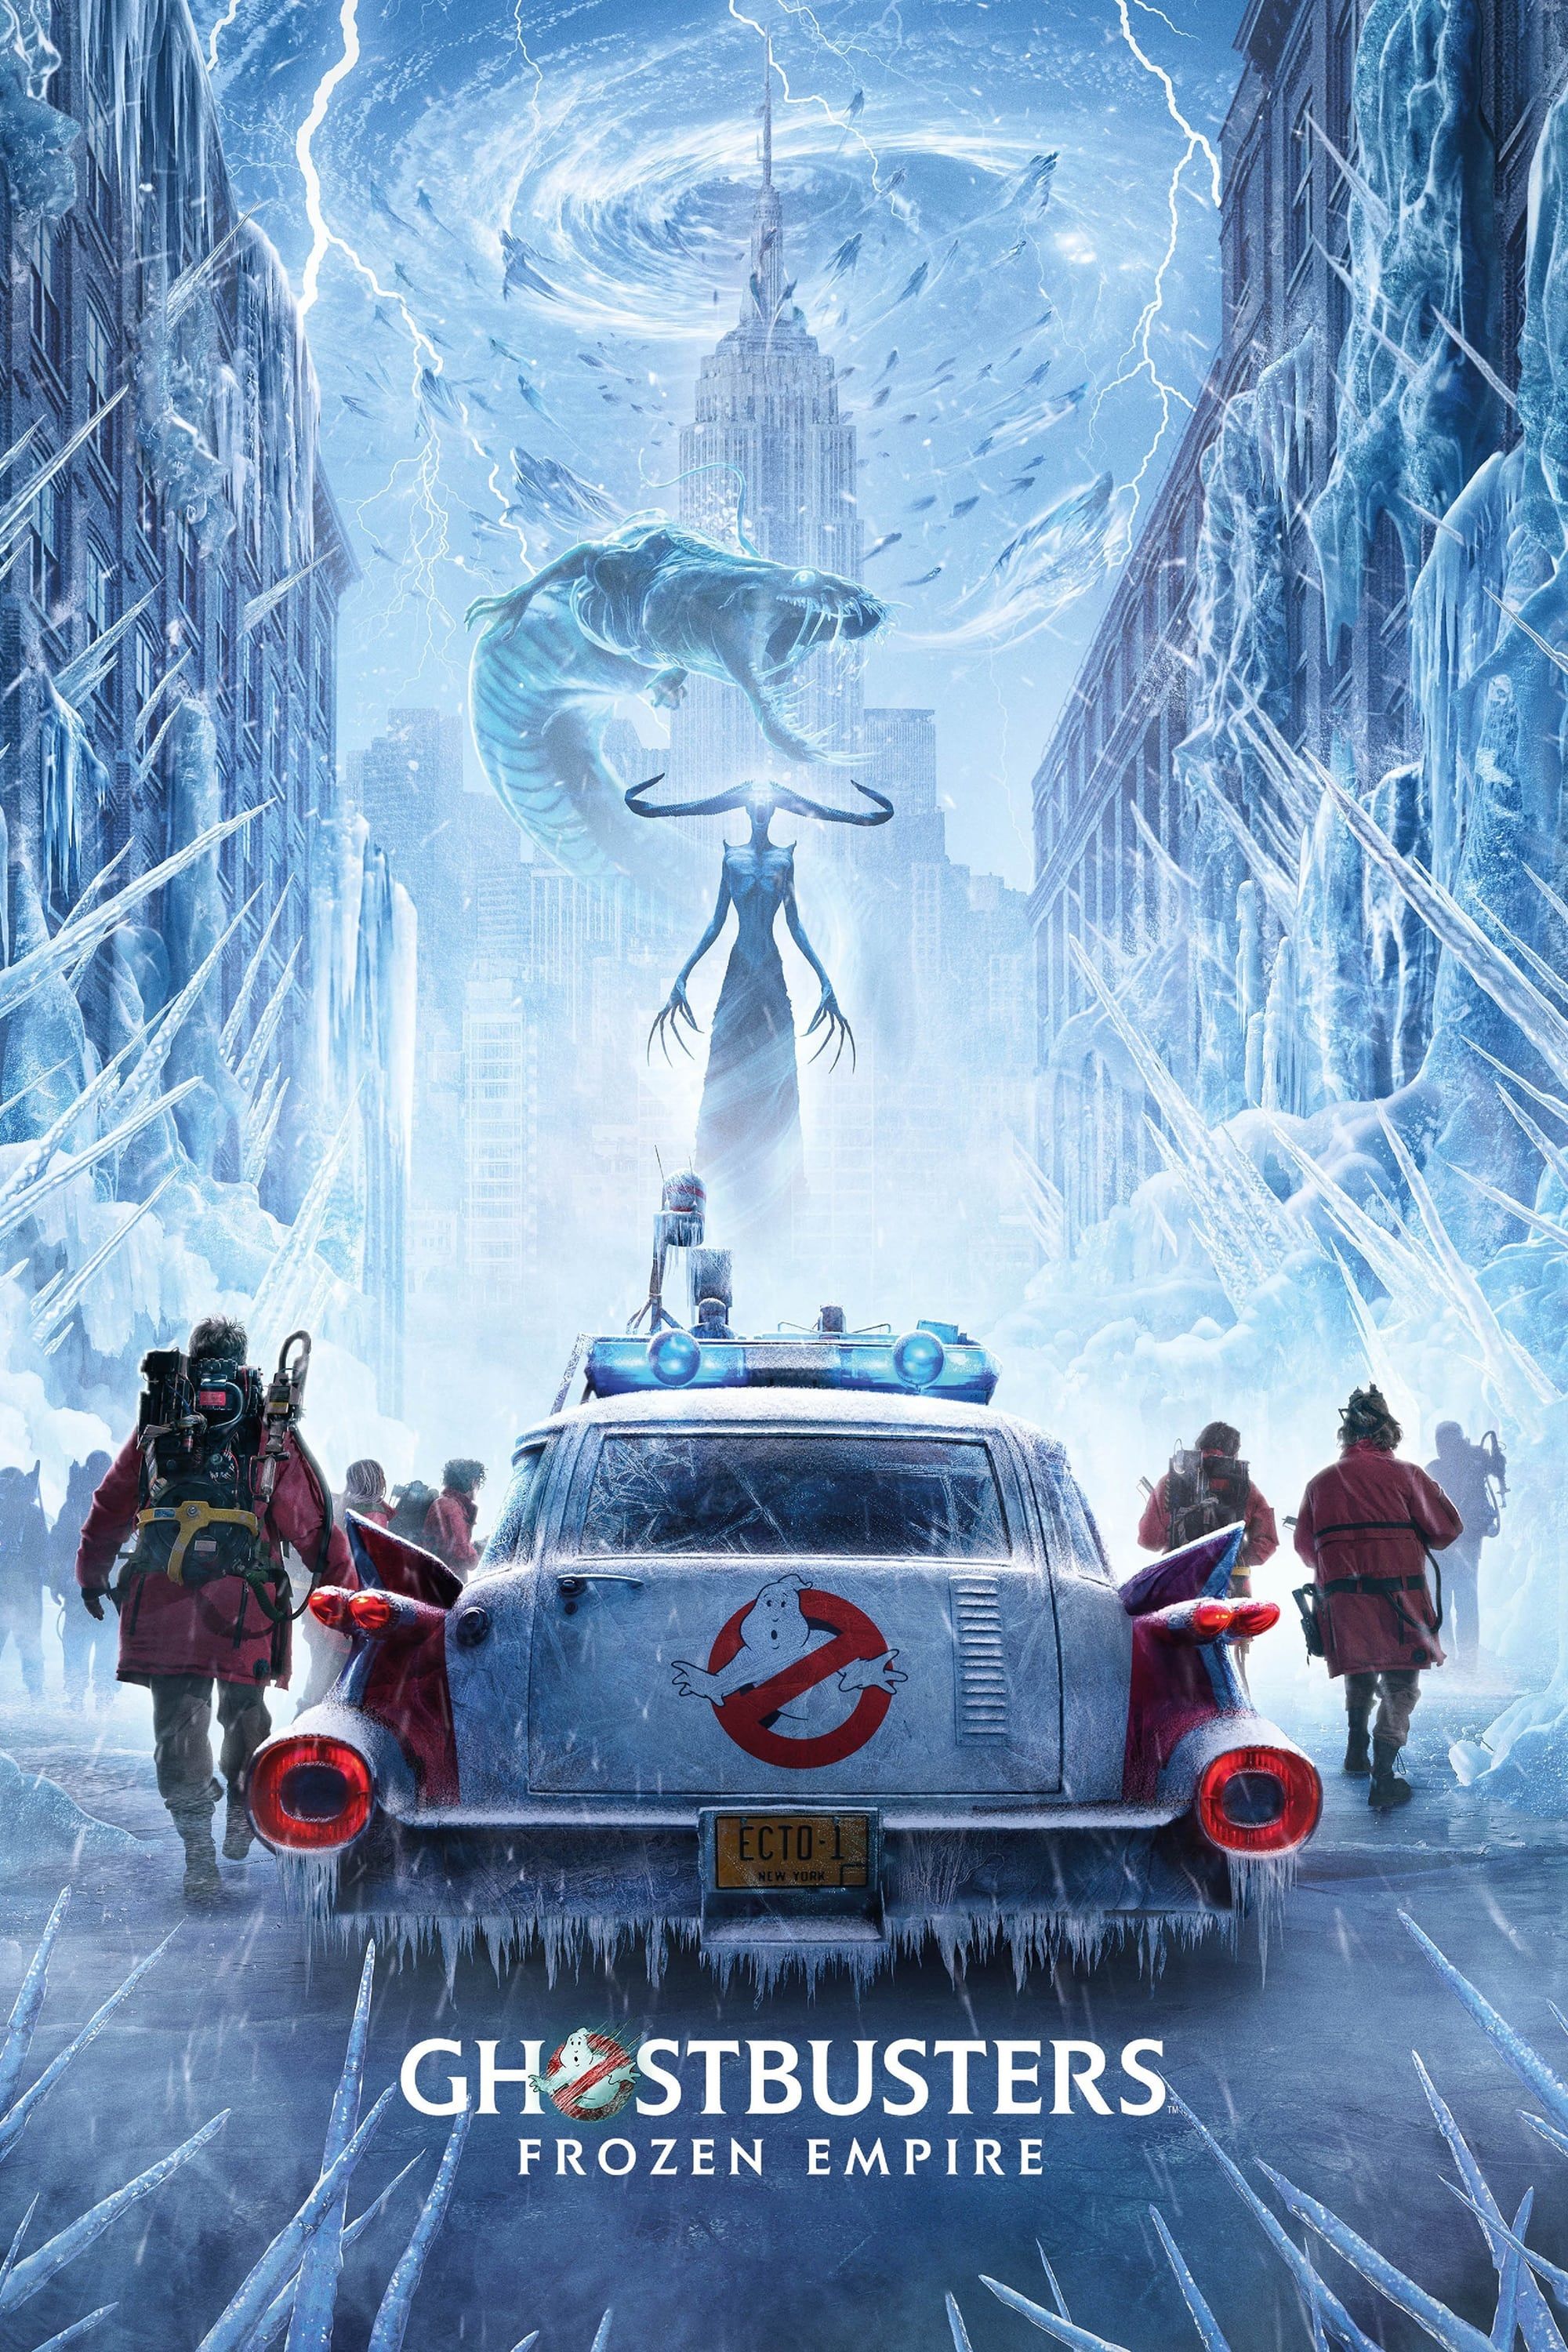 Mürettebatın Ecto 1'den Çıkışını ve New York'ta Buz Yaratıklarıyla Karşılaşmasını Anlatan Hayalet Avcıları Frozen Empire Posteri